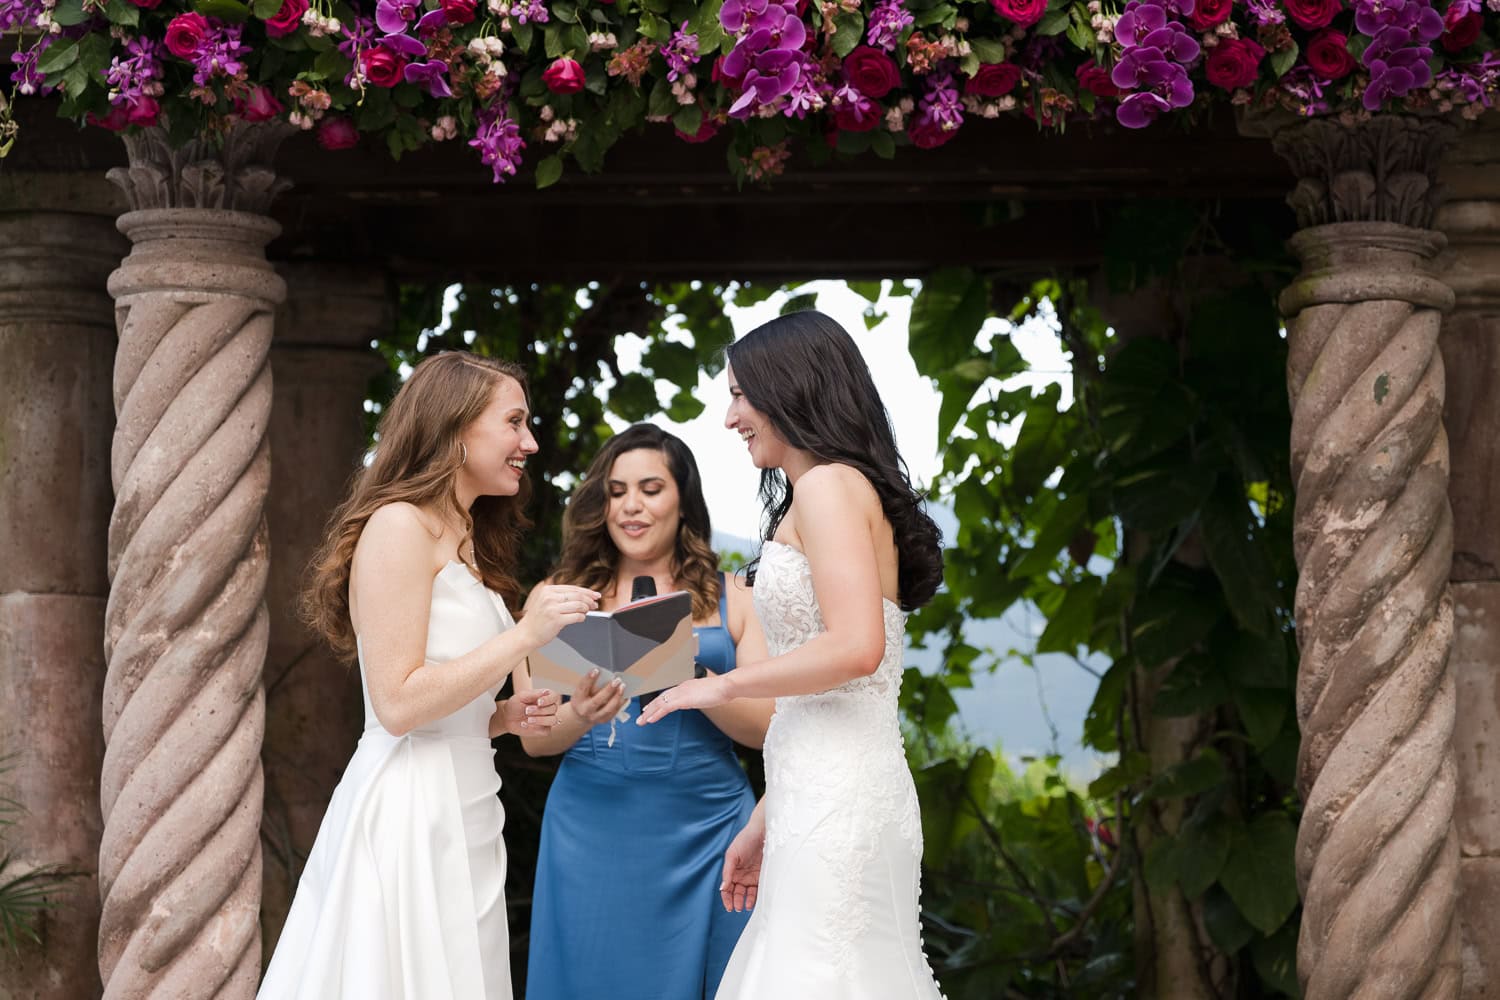 lesbian wedding at hacienda siesta alegre venue in rio grande puerto rico